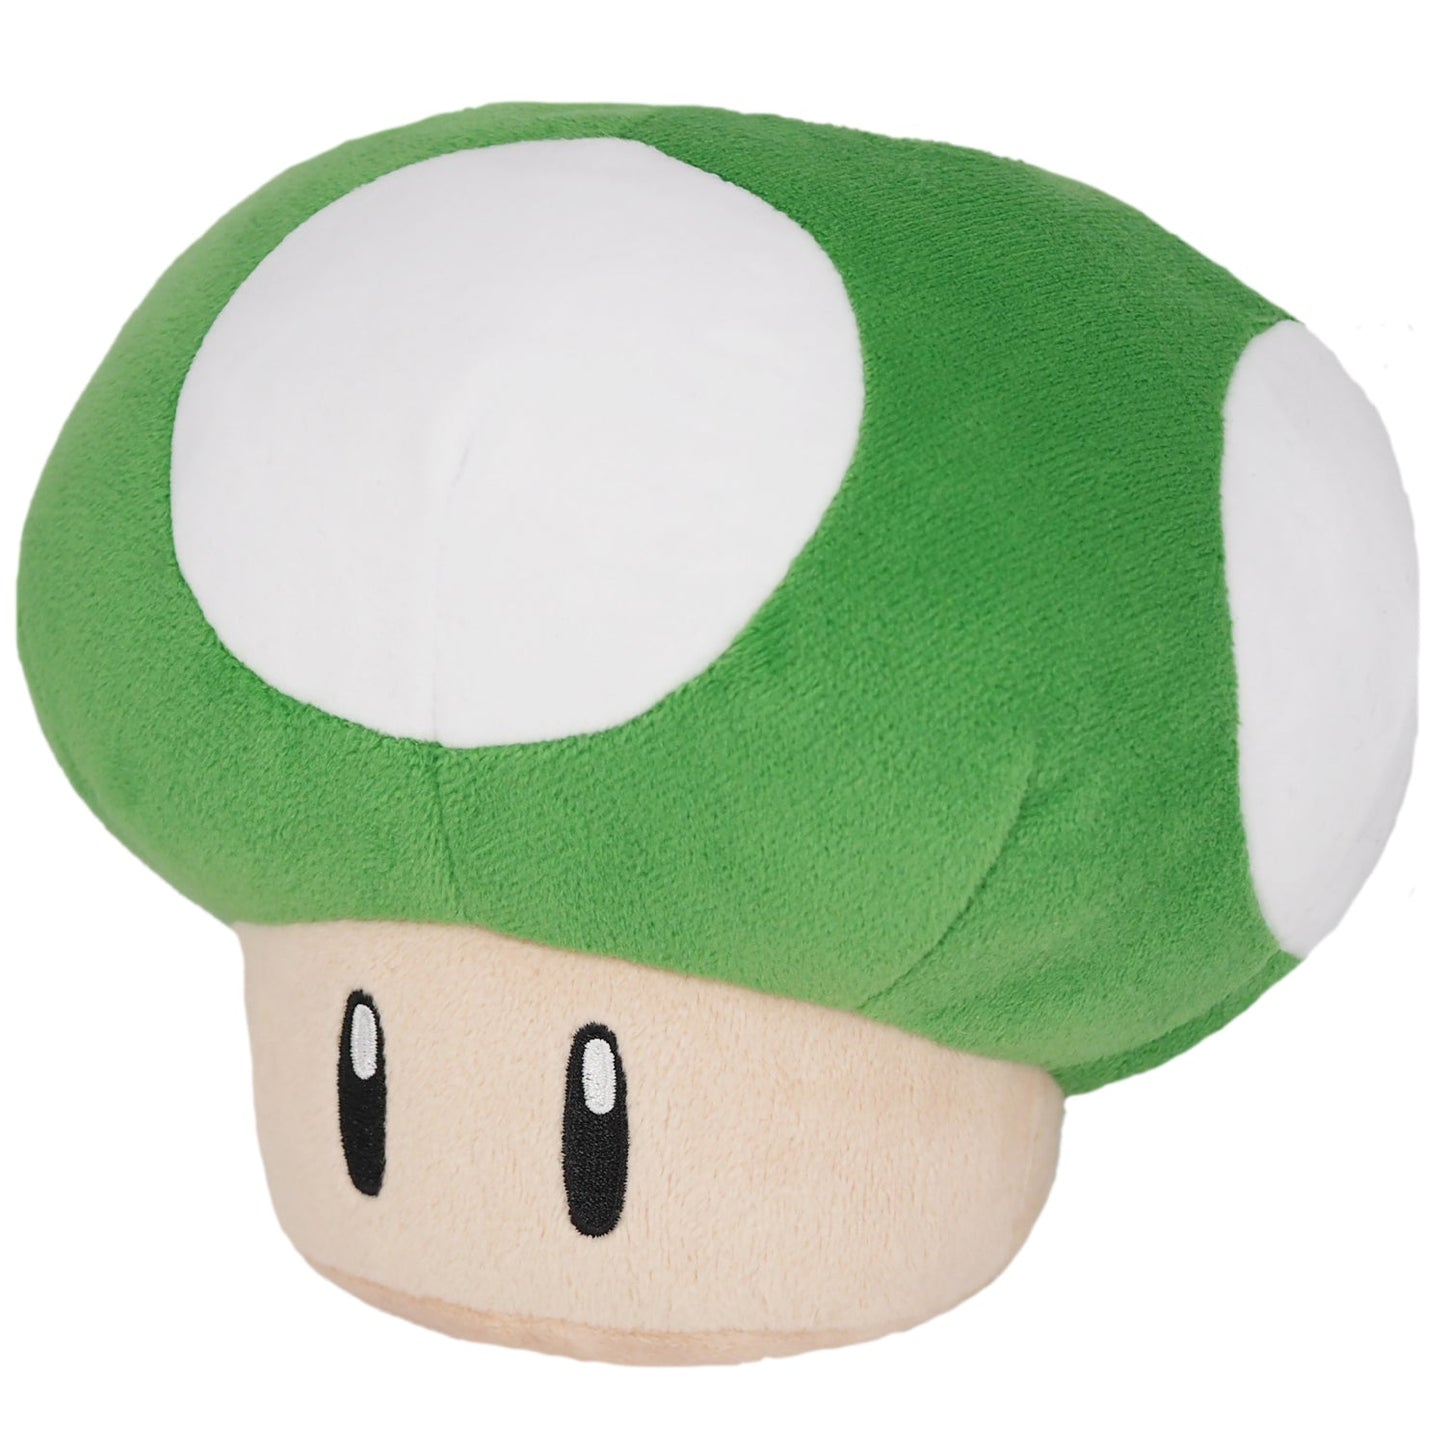 Super Mario Plush - Mushroom 1UP